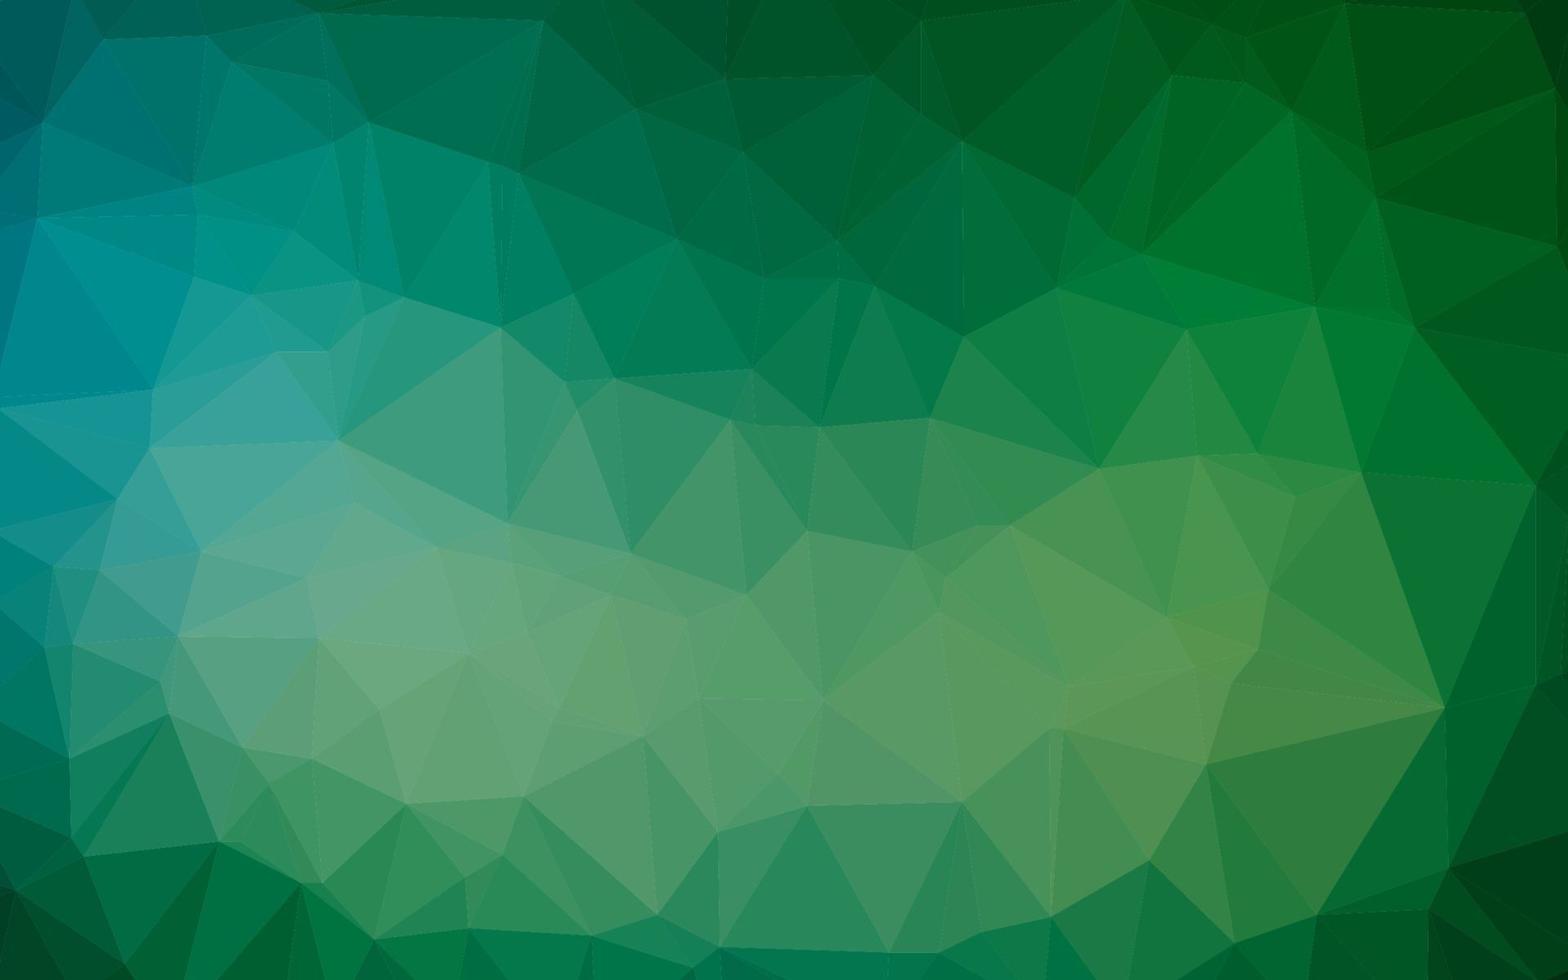 donkerblauwe, groene vector veelhoek abstracte achtergrond.